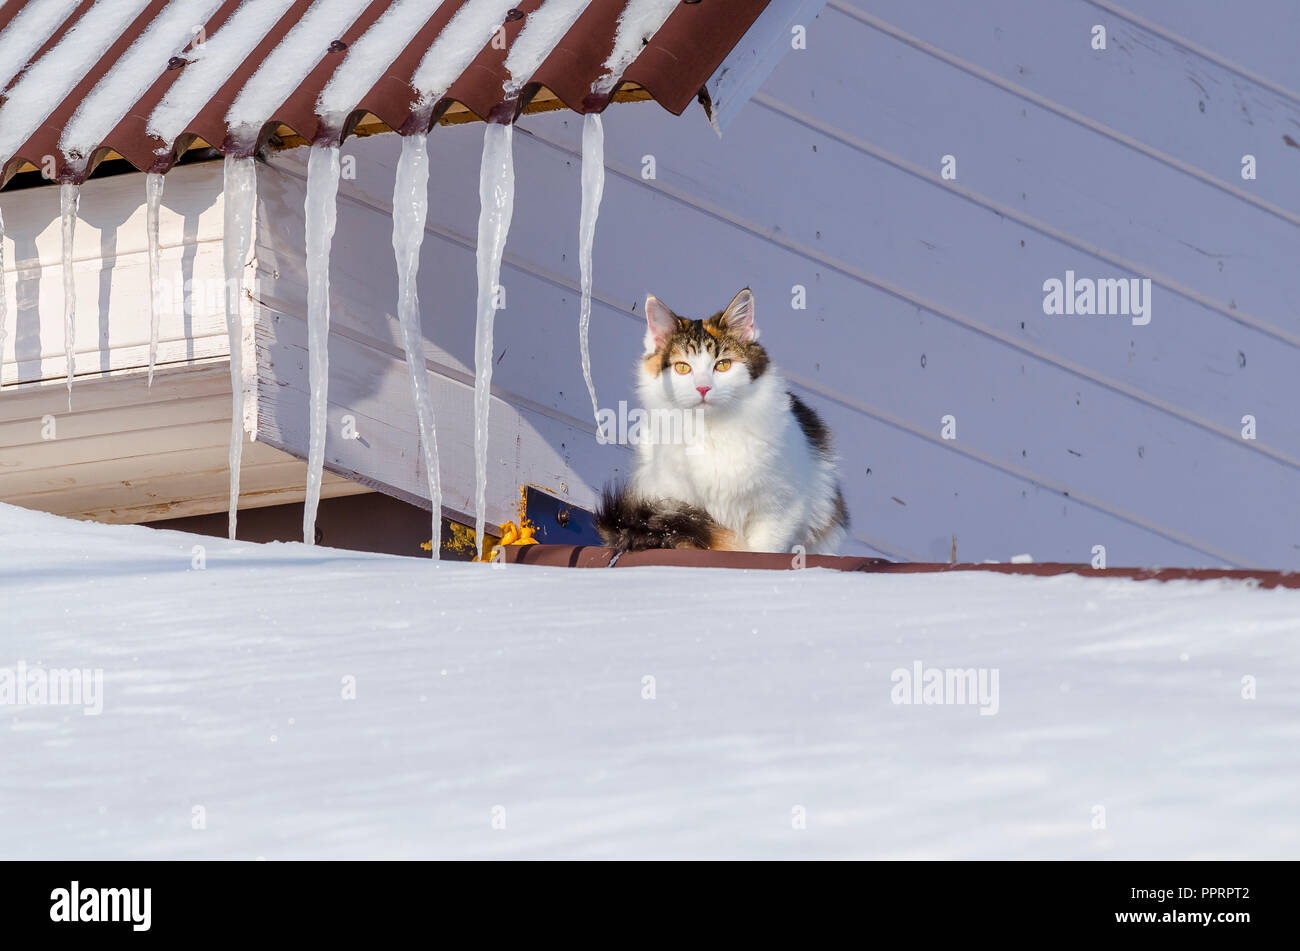 Beau chat calico marche sur toit de la maison de neige Kitty assis sur le toit au soleil le jour de Noël Banque D'Images